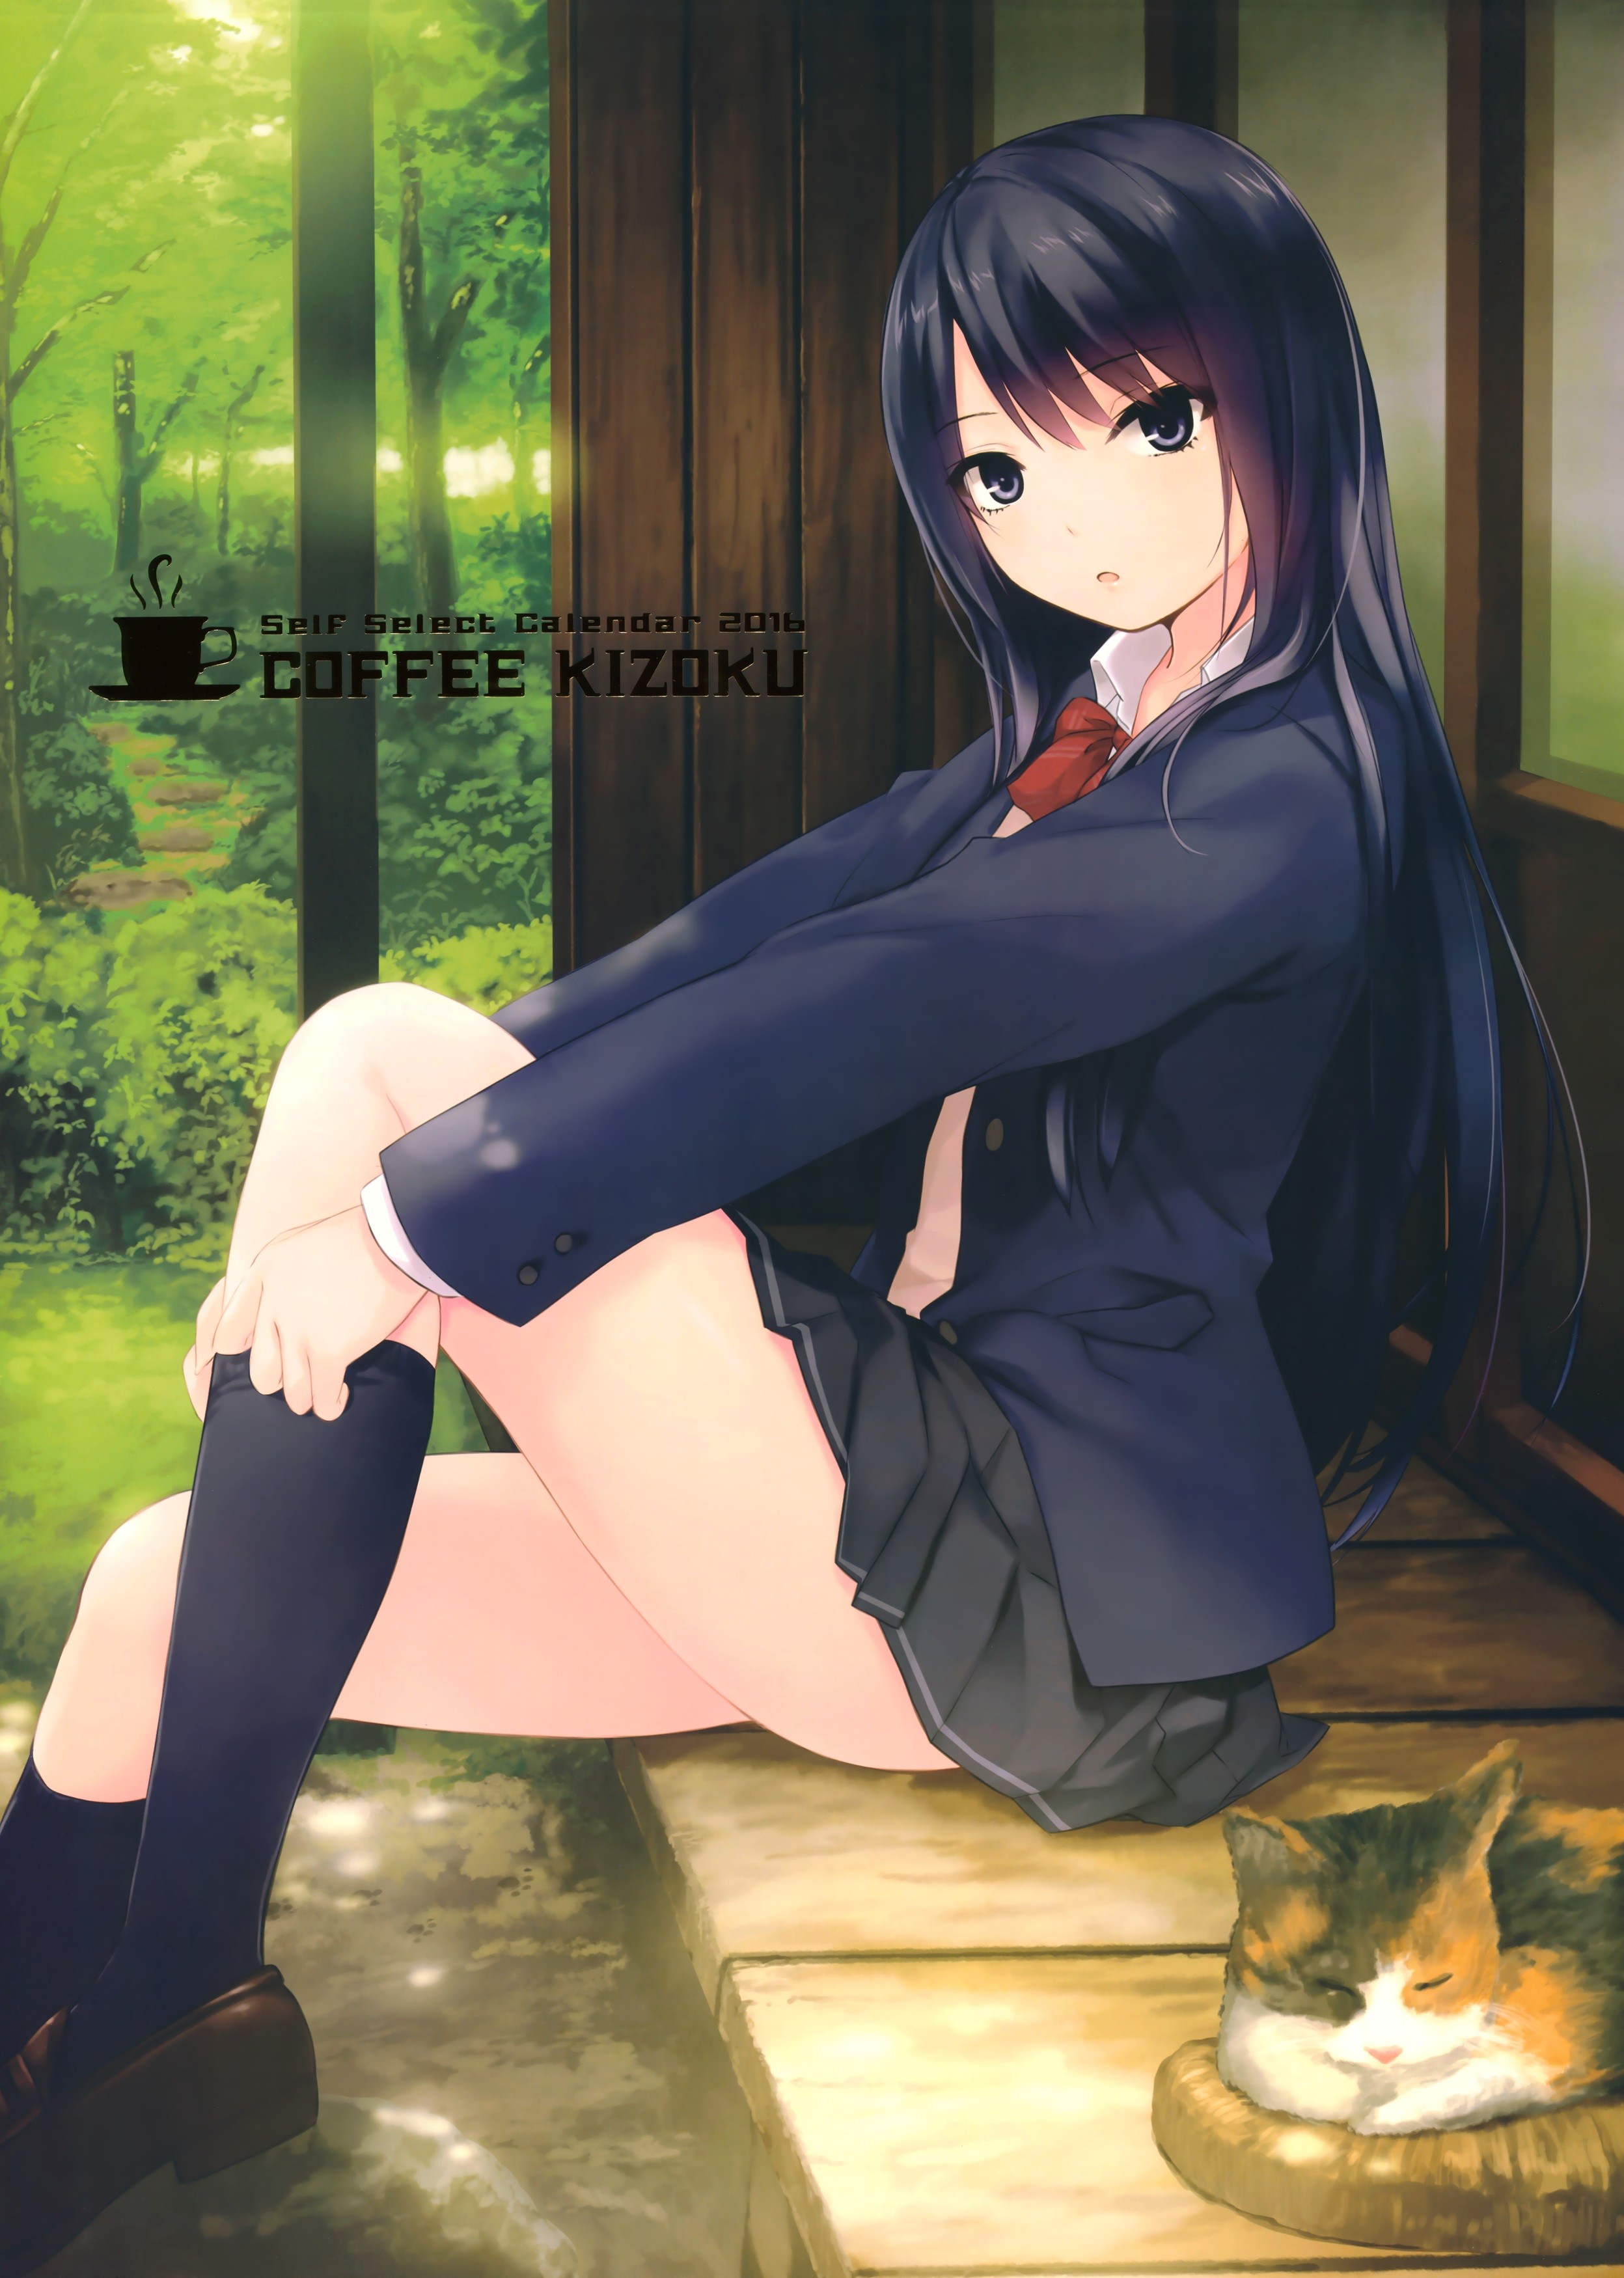 Long Hair Black Eyes Coffee Kizoku Anime Anime Girls Black Hair Forest Cats Skirt Knee